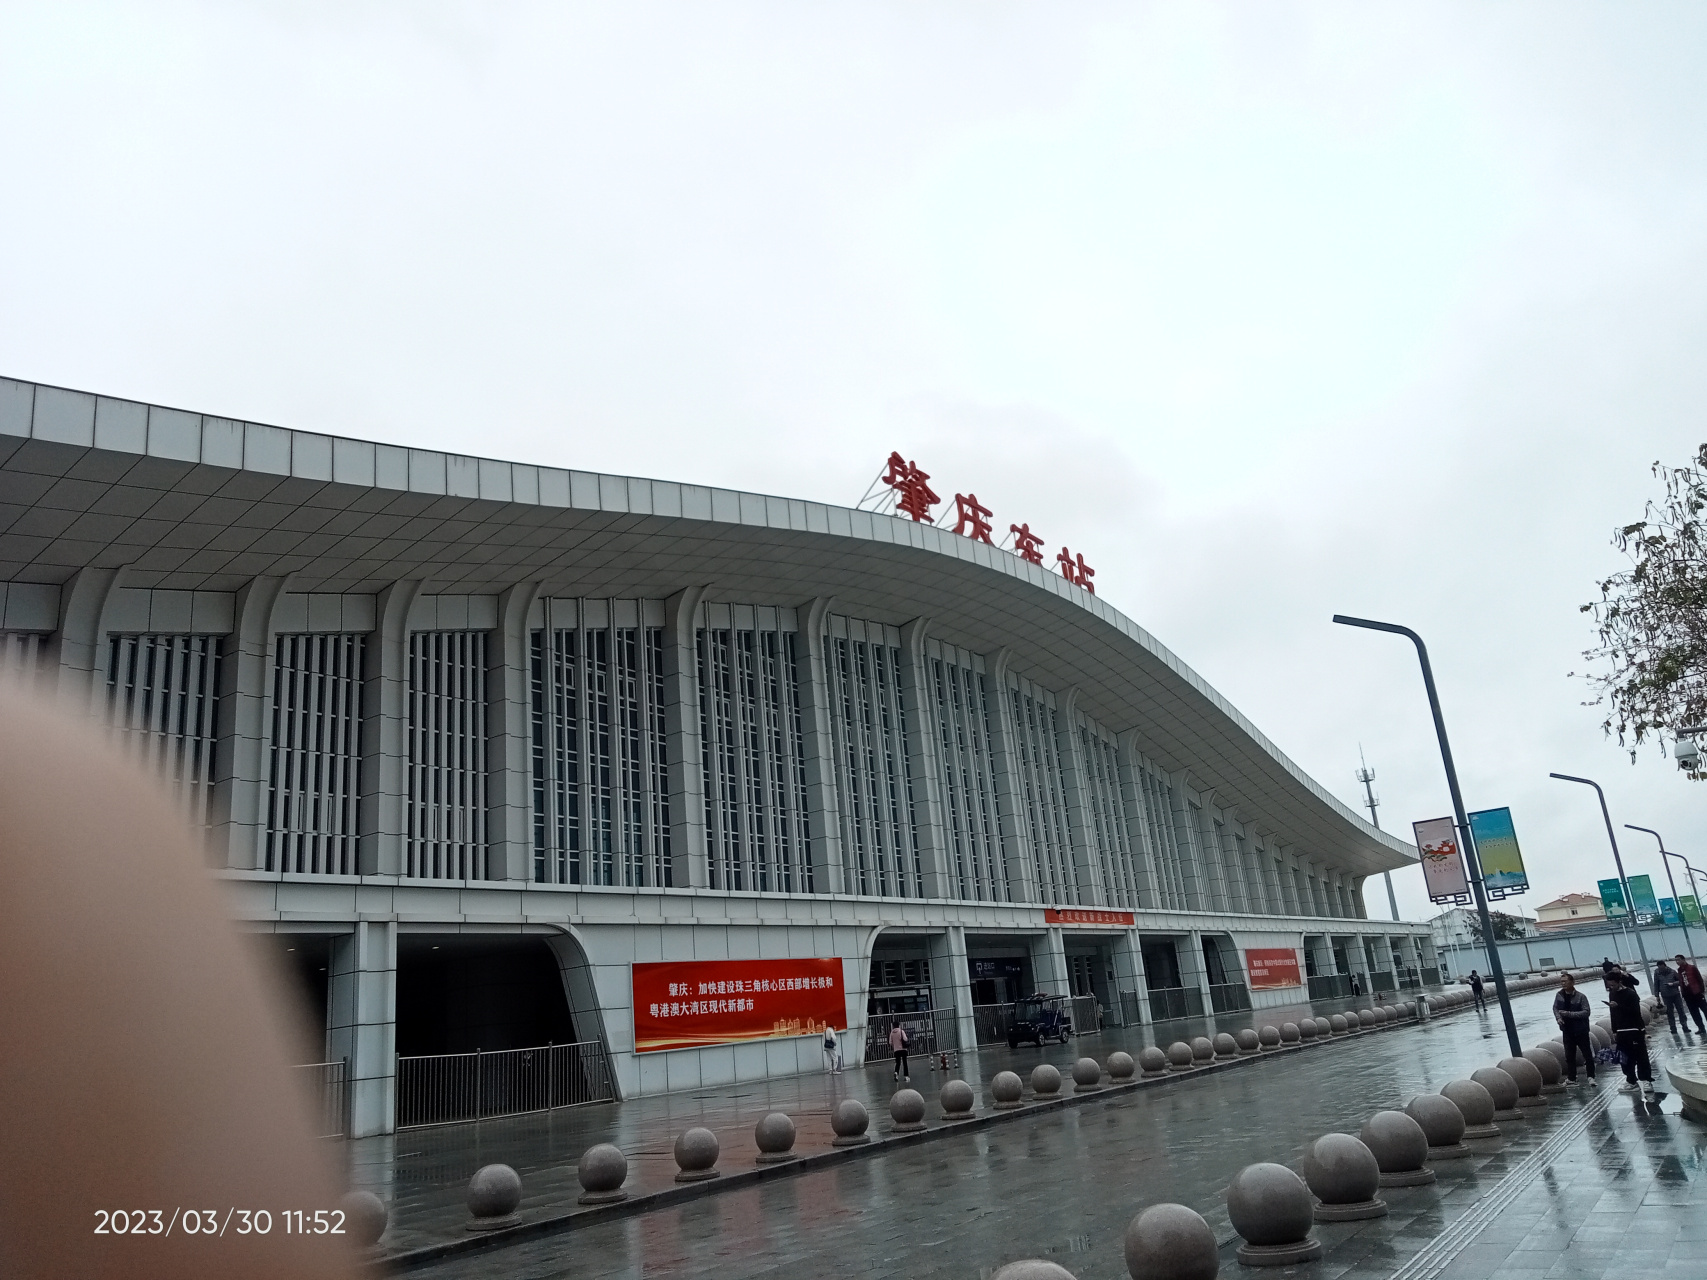 20230330周四下午广东省肇庆东高铁站,超前规划建设,配套公交站和城际